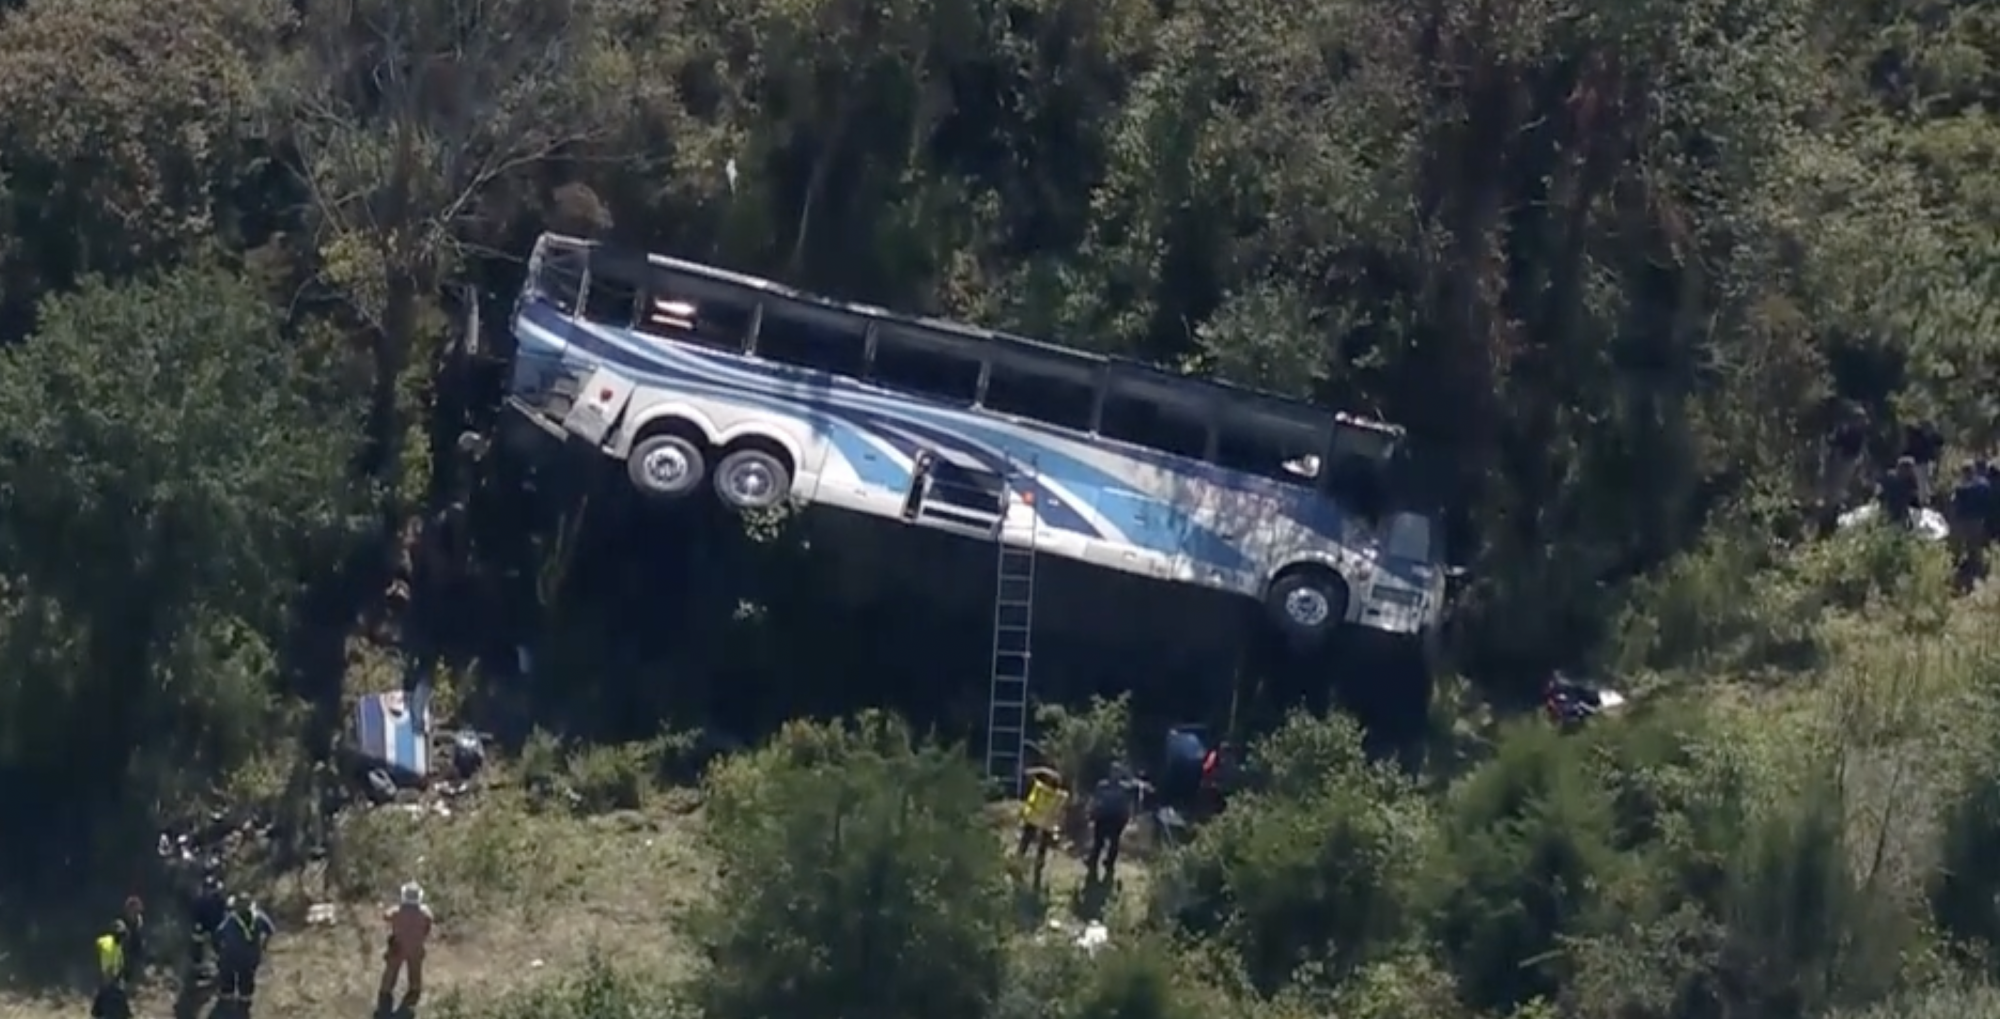 15 méteres szakadékba zuhant egy busz New York államban, két ember meghalt